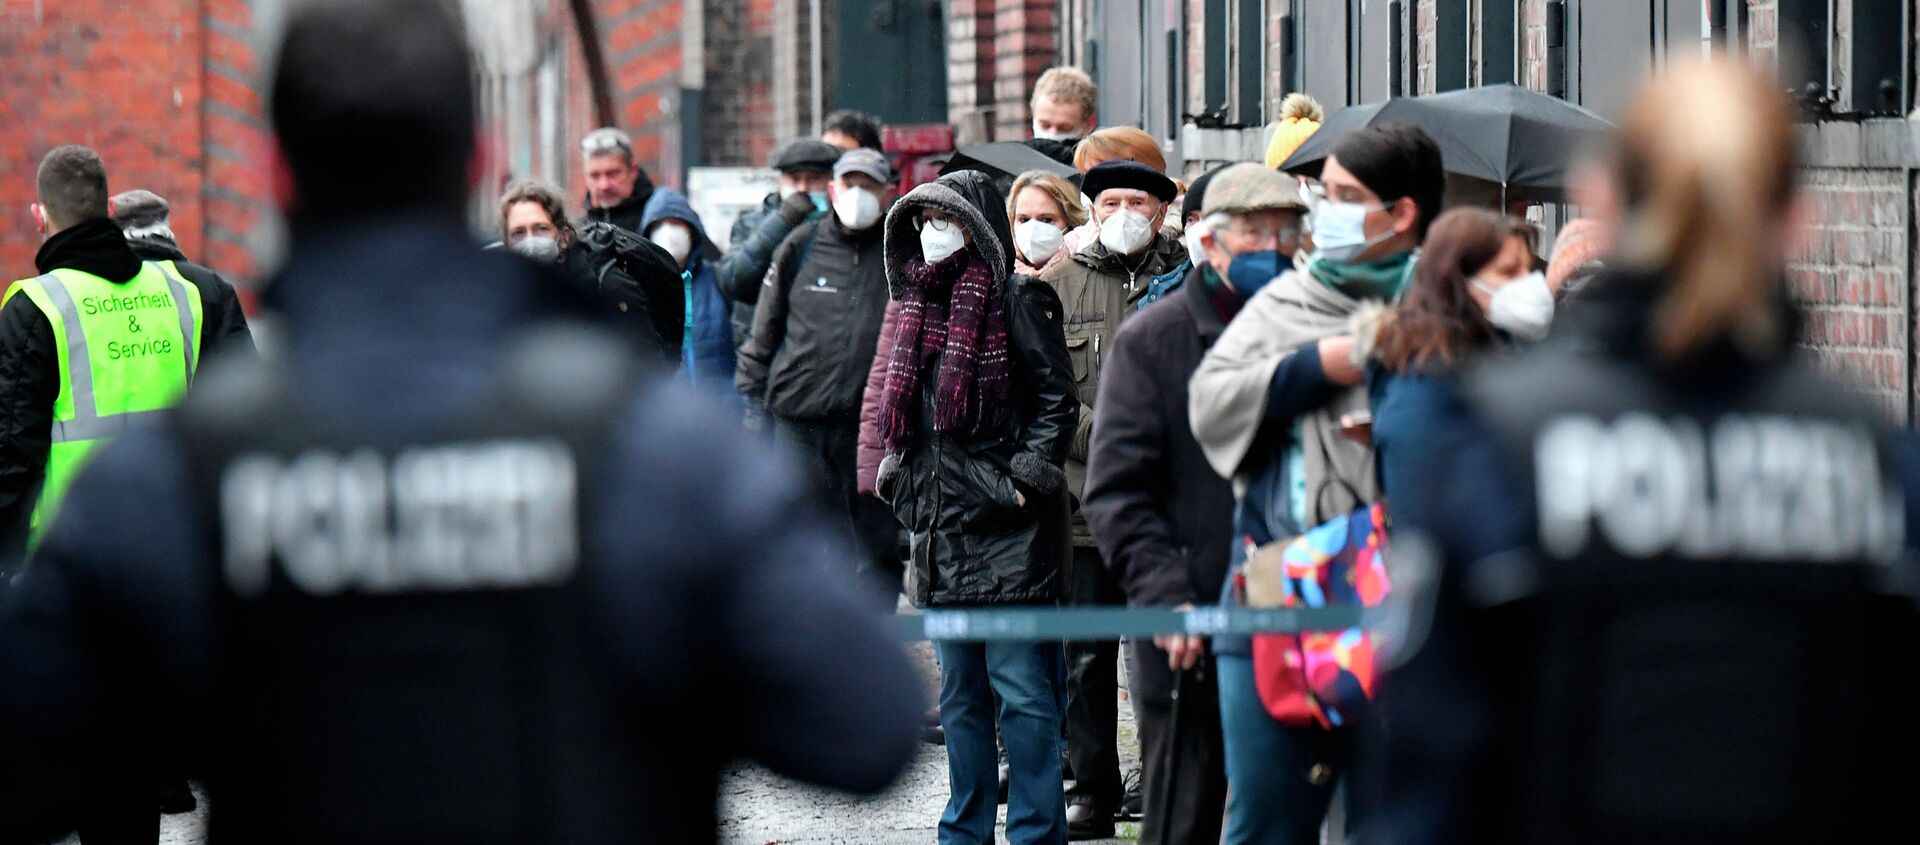 Сотрудники полиции наблюдают за очередью людей в масках у центра вакцинации в здании Берлинской арены  - Sputnik Кыргызстан, 1920, 30.01.2021